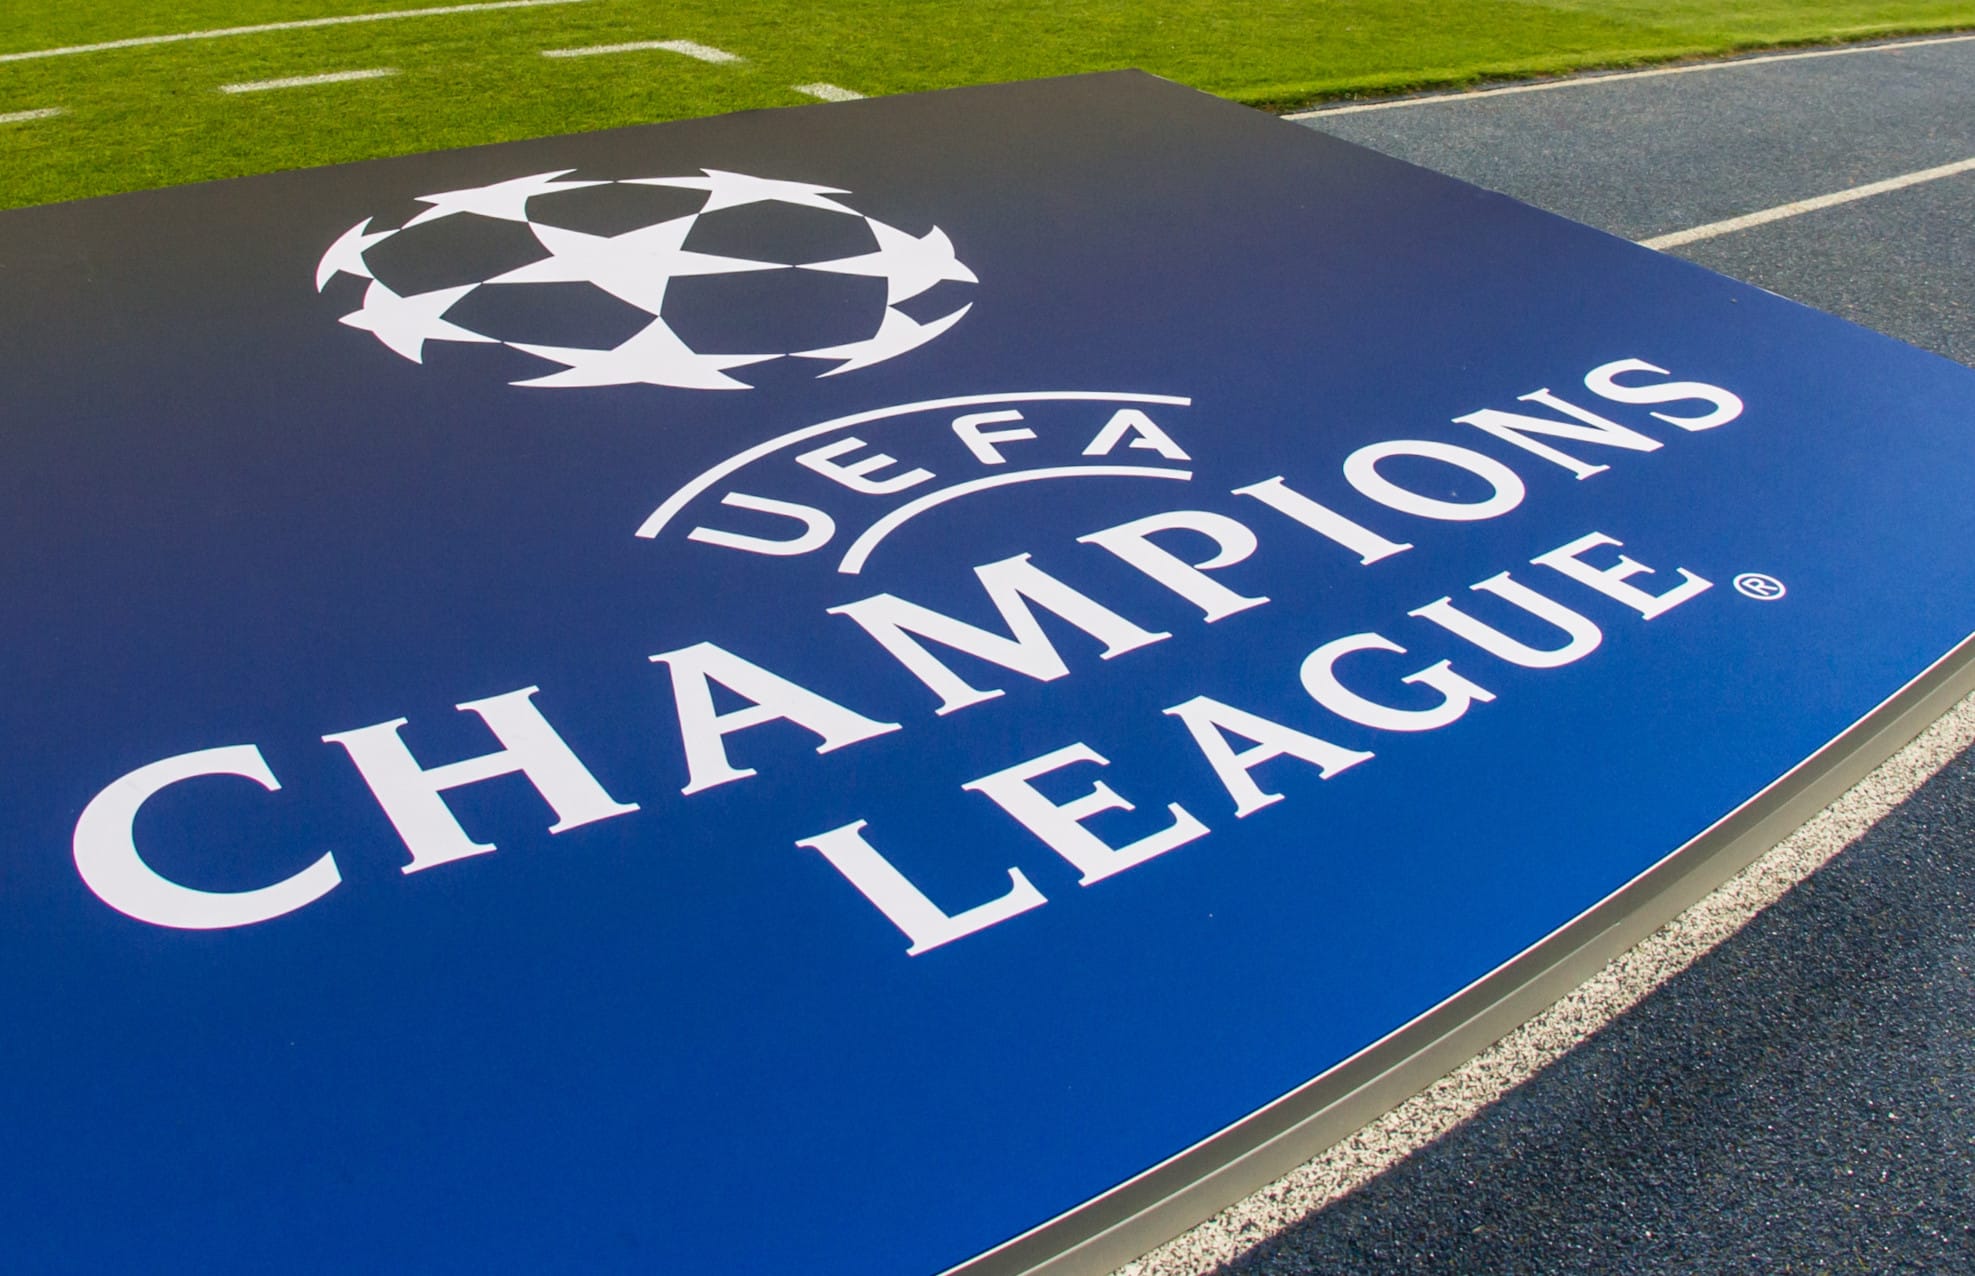 Champions League am Mittwoch – Alle Spiele vom 5. Spieltag